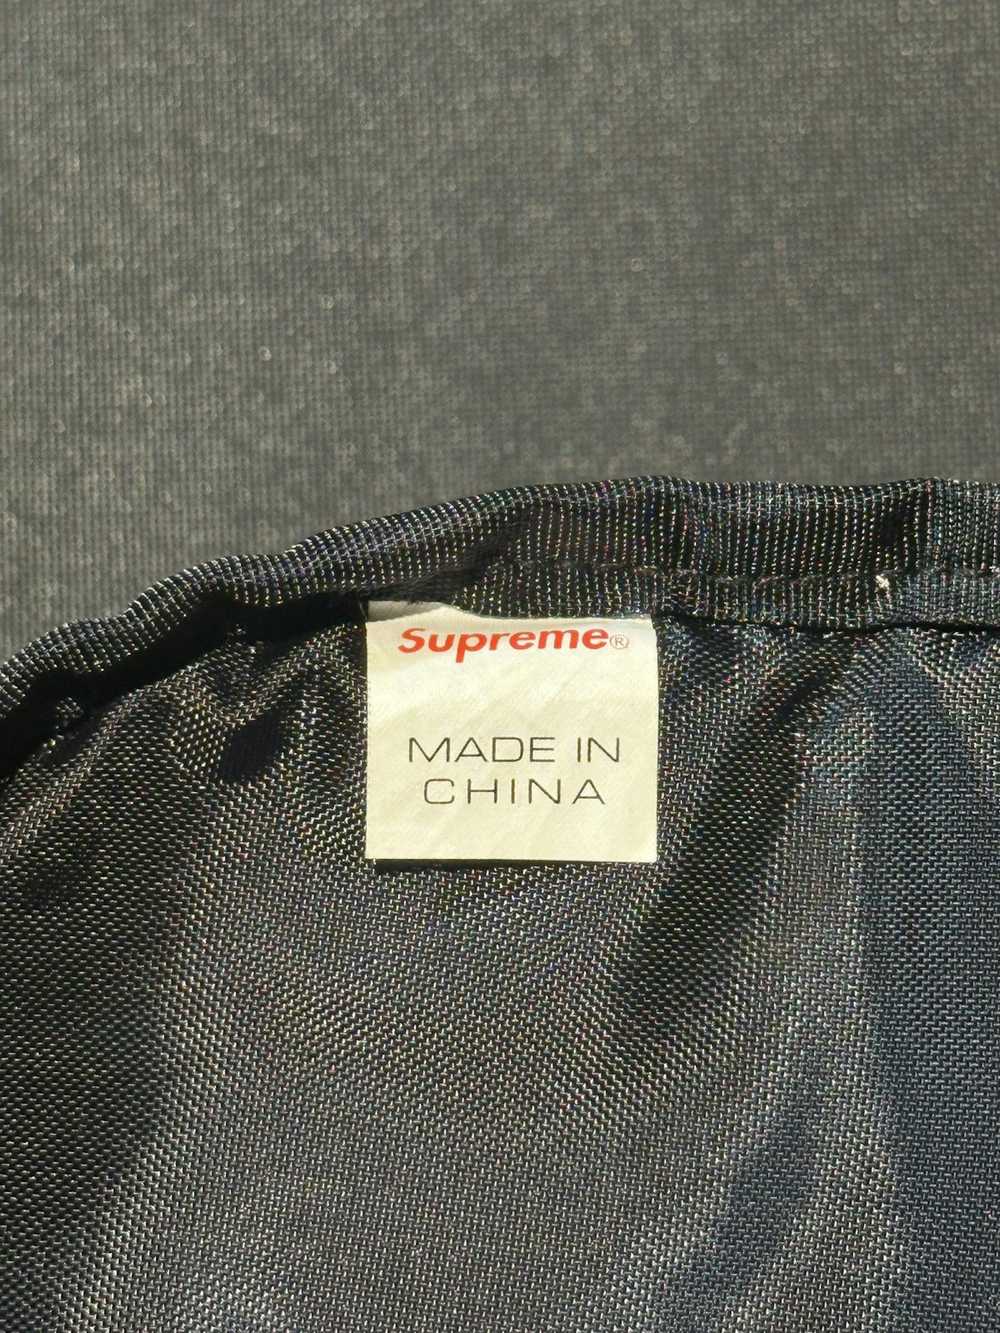 Supreme Supreme SS17 Shoulder Bag - image 5